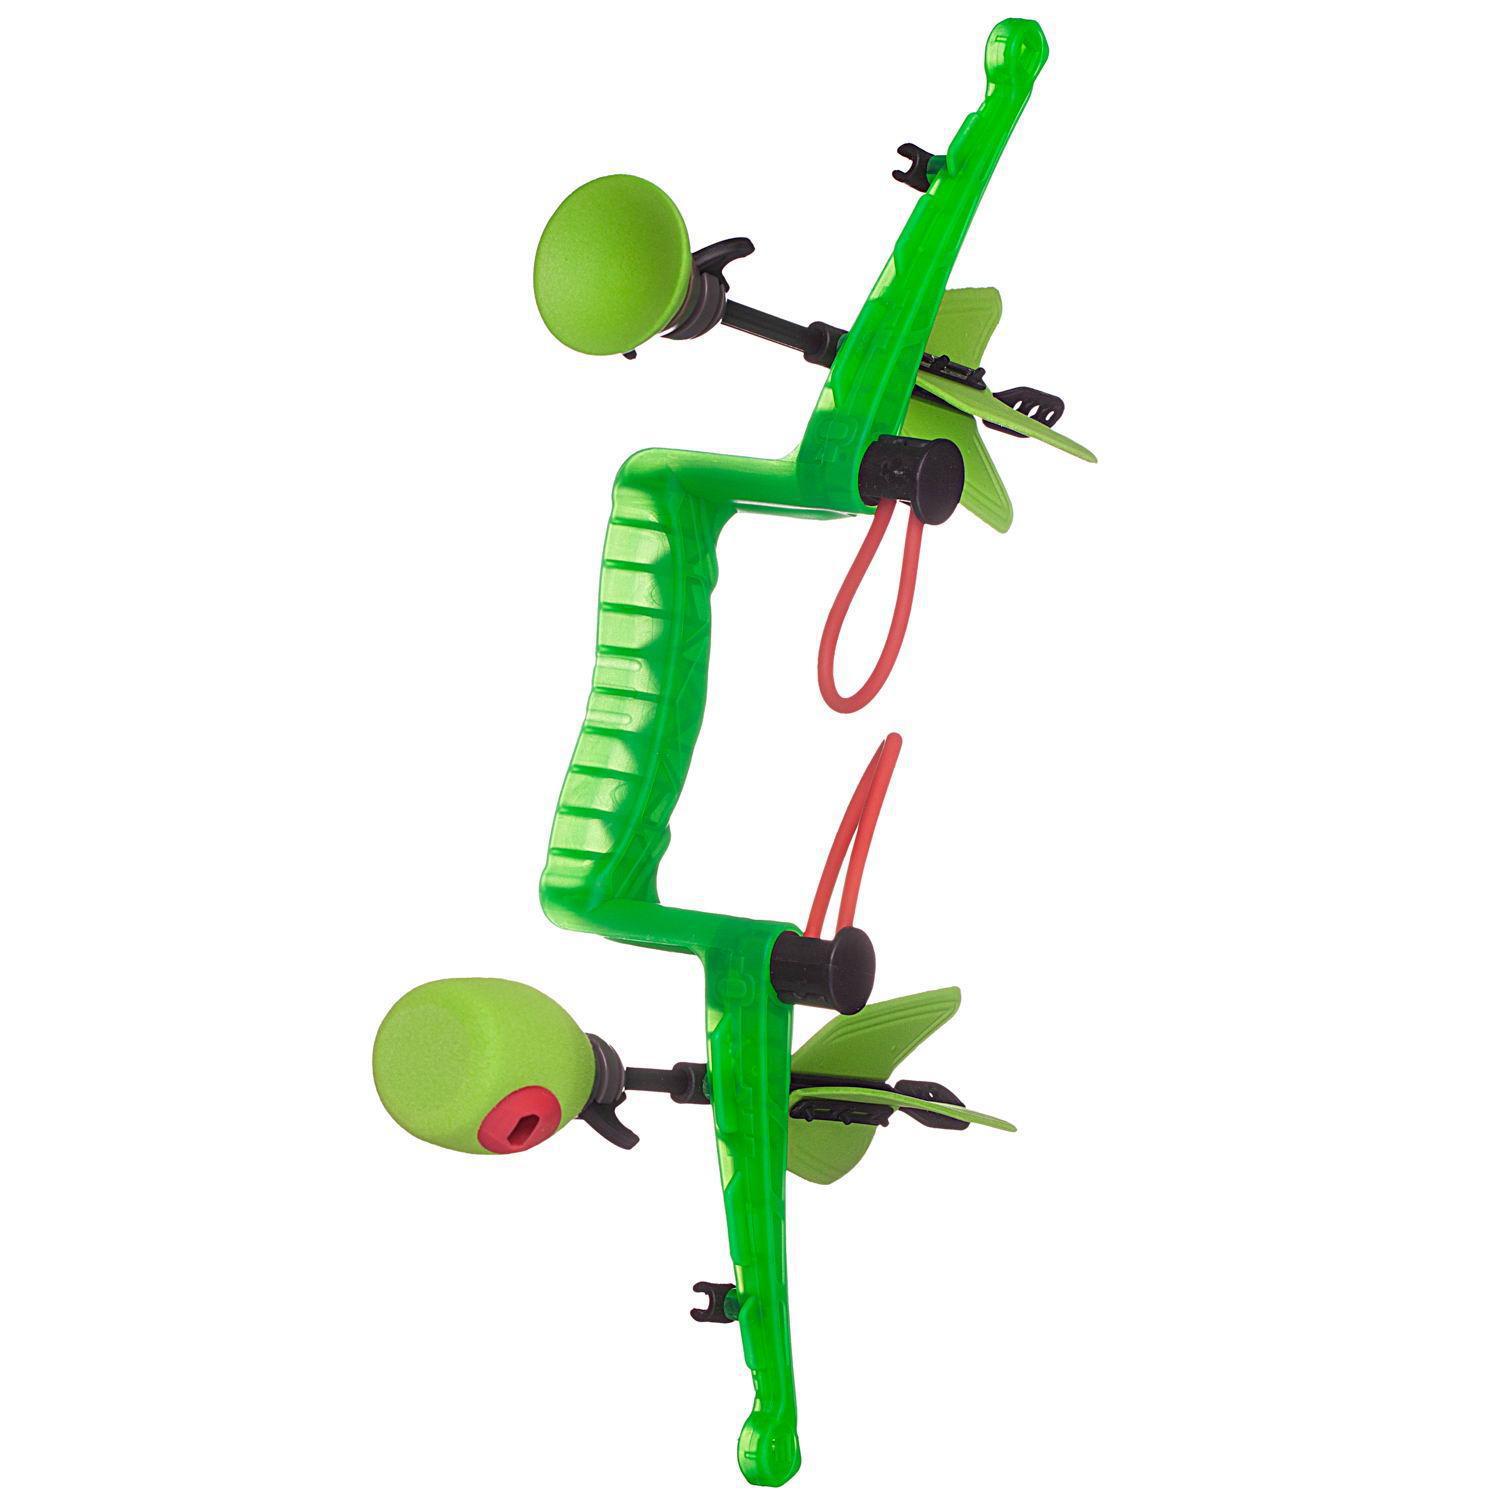 Лук игрушечный игровой Abtoys с 2 стрелами, зеленый